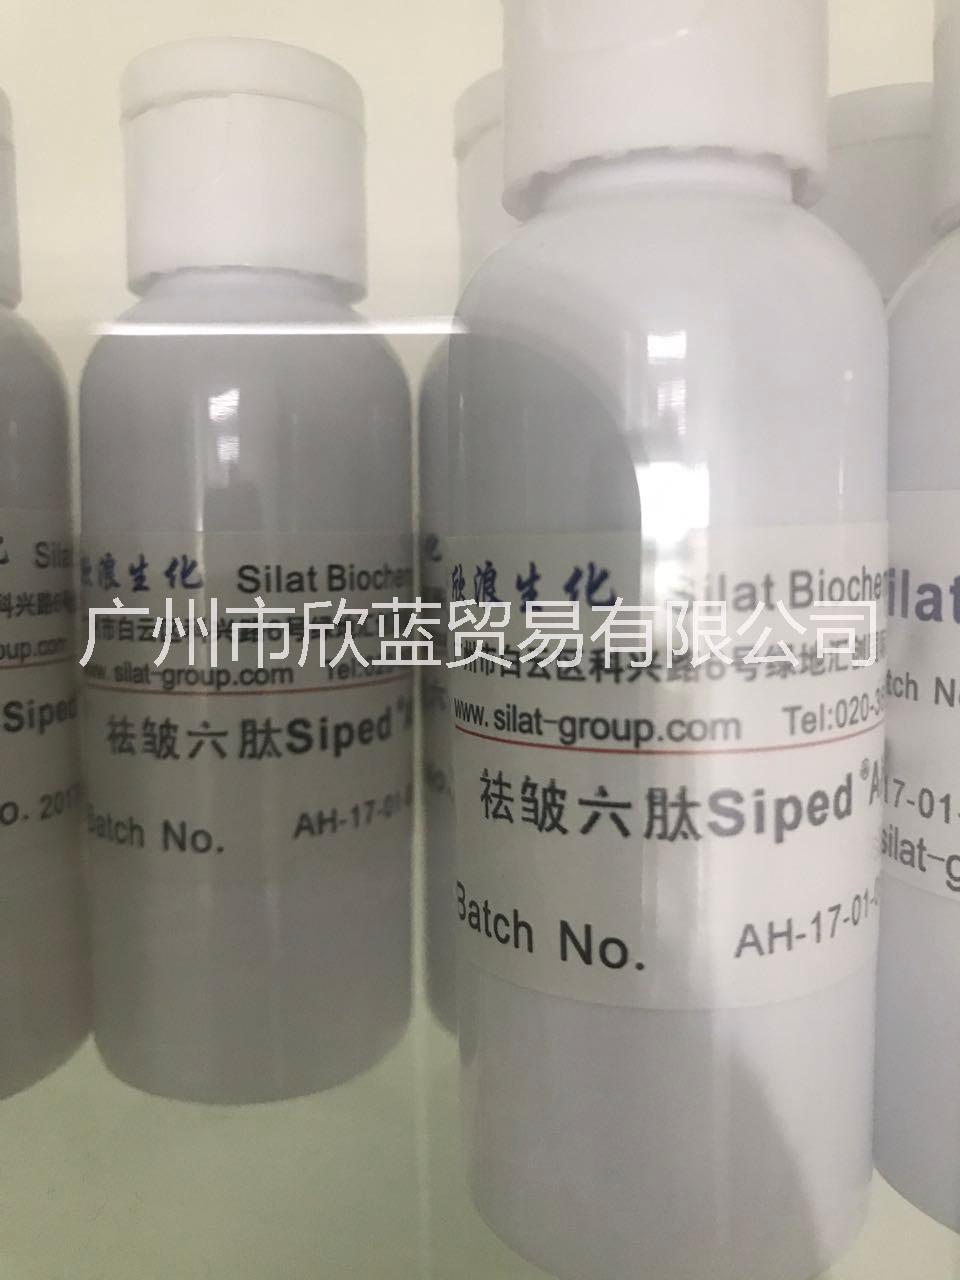 欣浪生化祛皱六肽 Siped ®*H-8图片